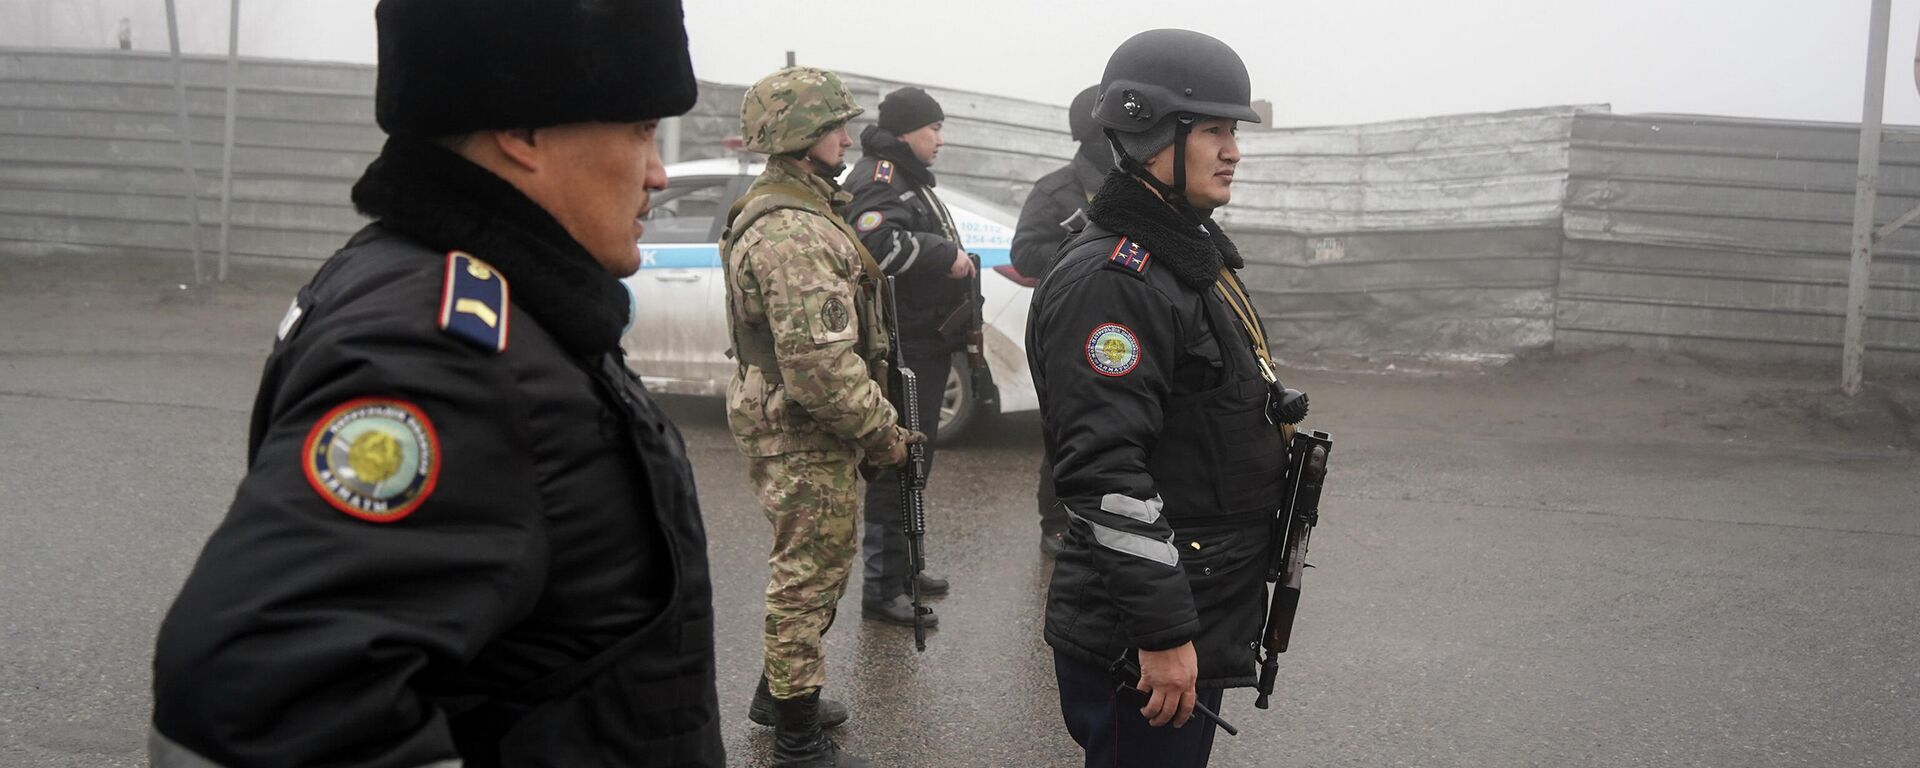 Казахстанская полиция и солдаты контролируют дорогу в Алматы - Sputnik Кыргызстан, 1920, 09.01.2022